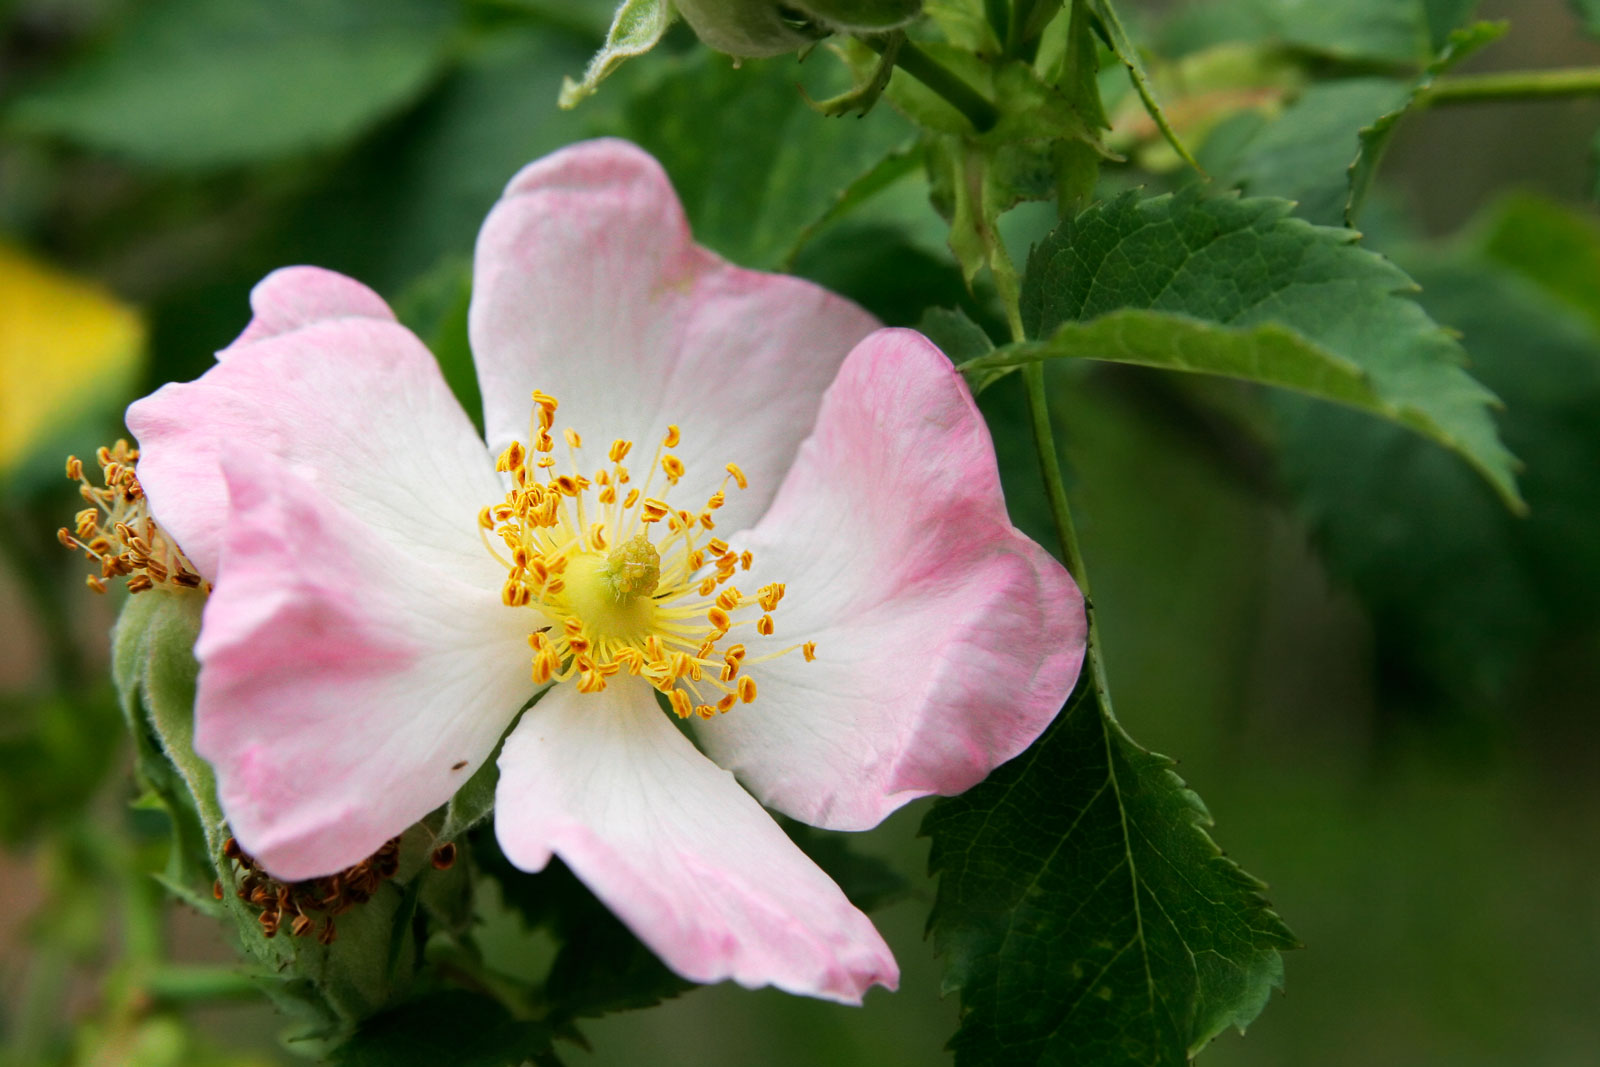 http://upload.wikimedia.org/wikipedia/commons/1/18/Wild_rose_flower.jpg